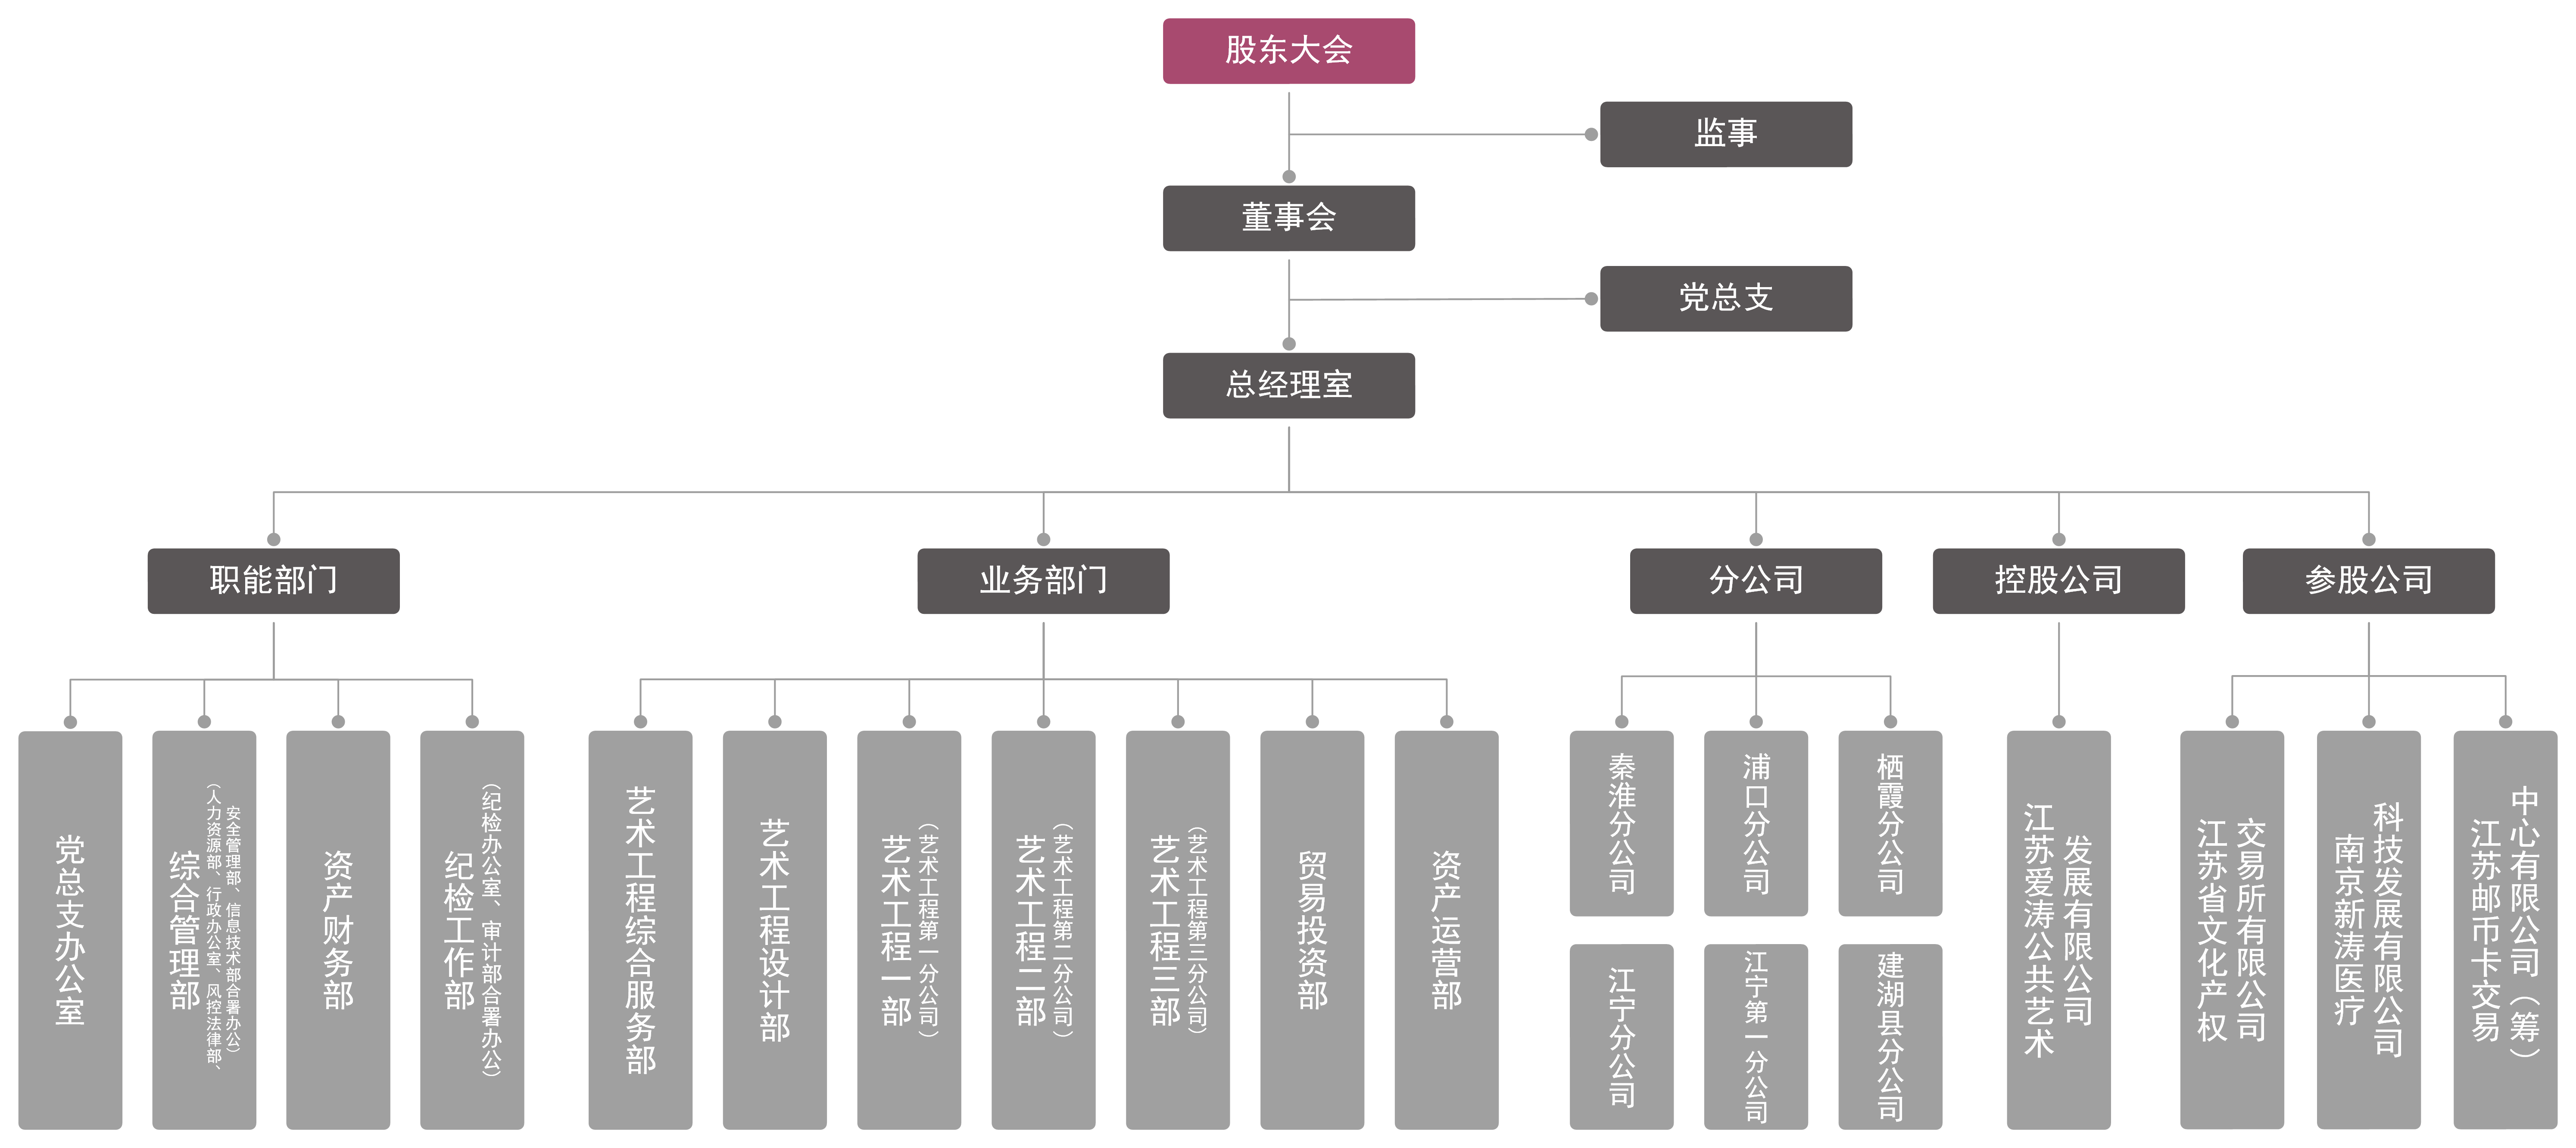 20221026 （官网灰色）江苏爱涛文化产业有限公司2020年度组织架构图.png